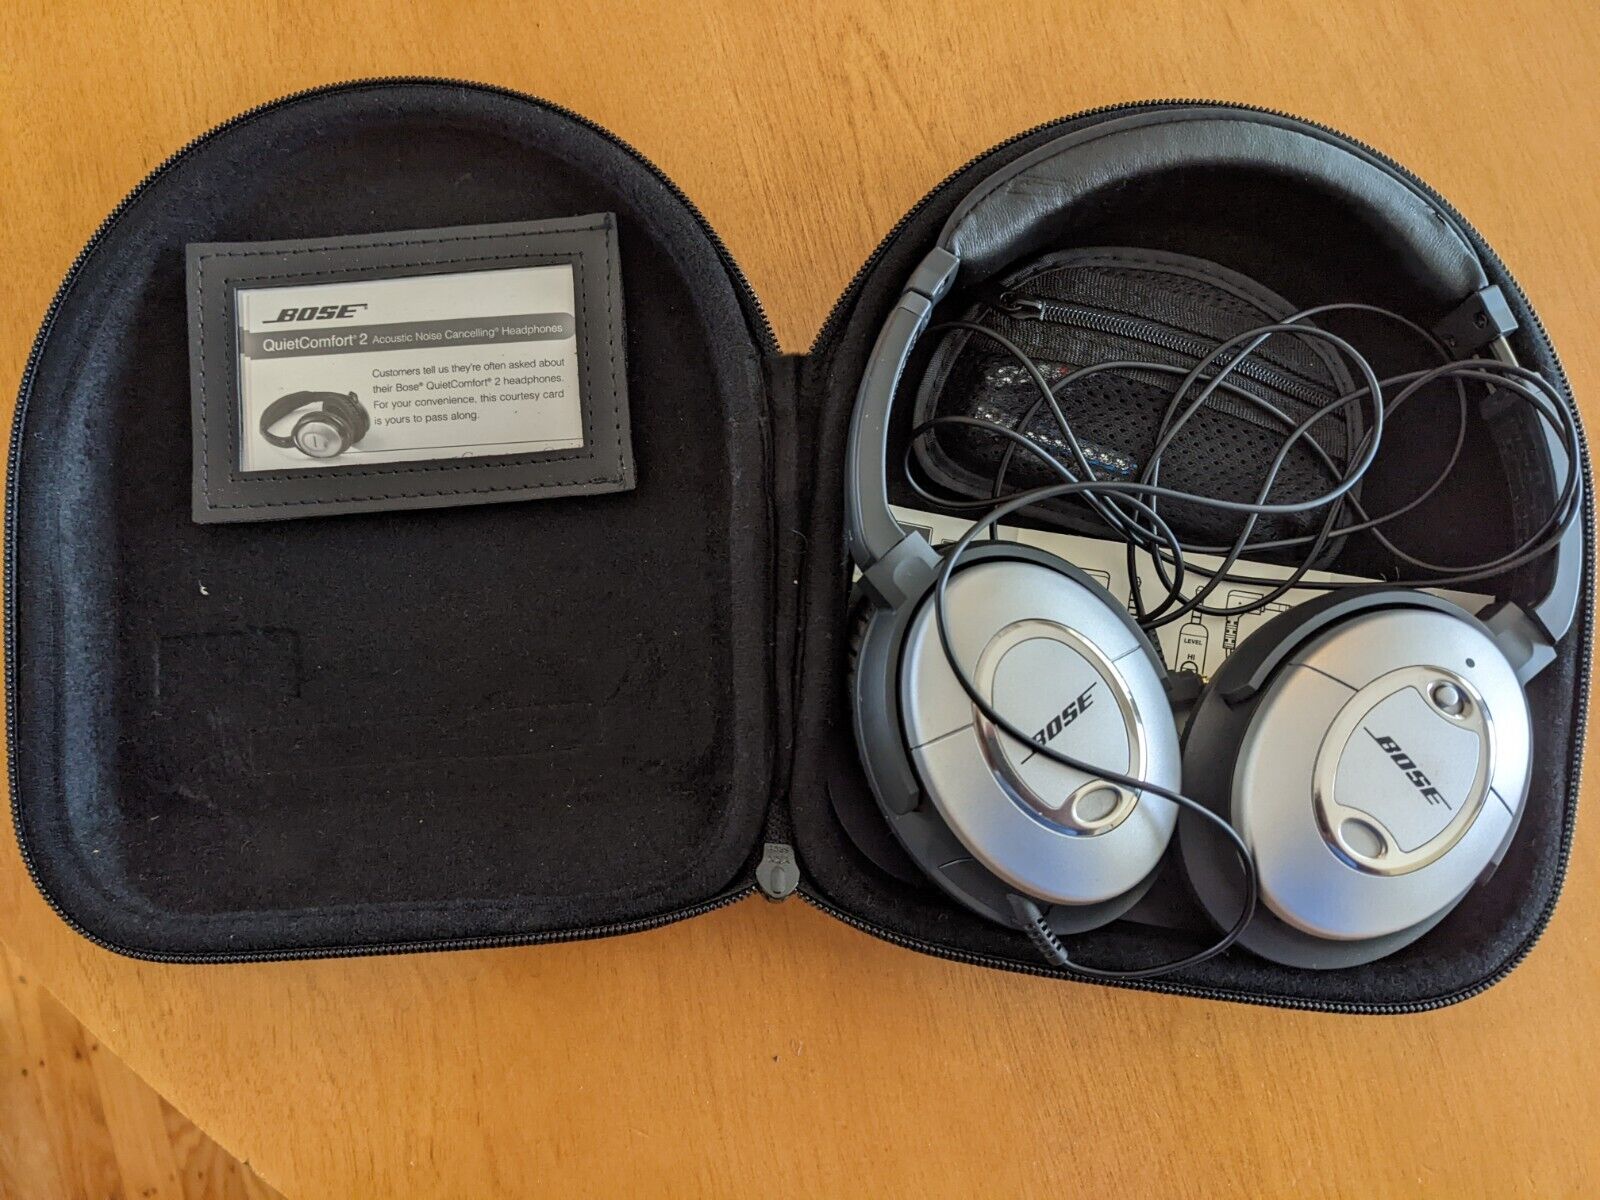 Bose QuietComfort 2 Headphones - Silver for sale online | eBay